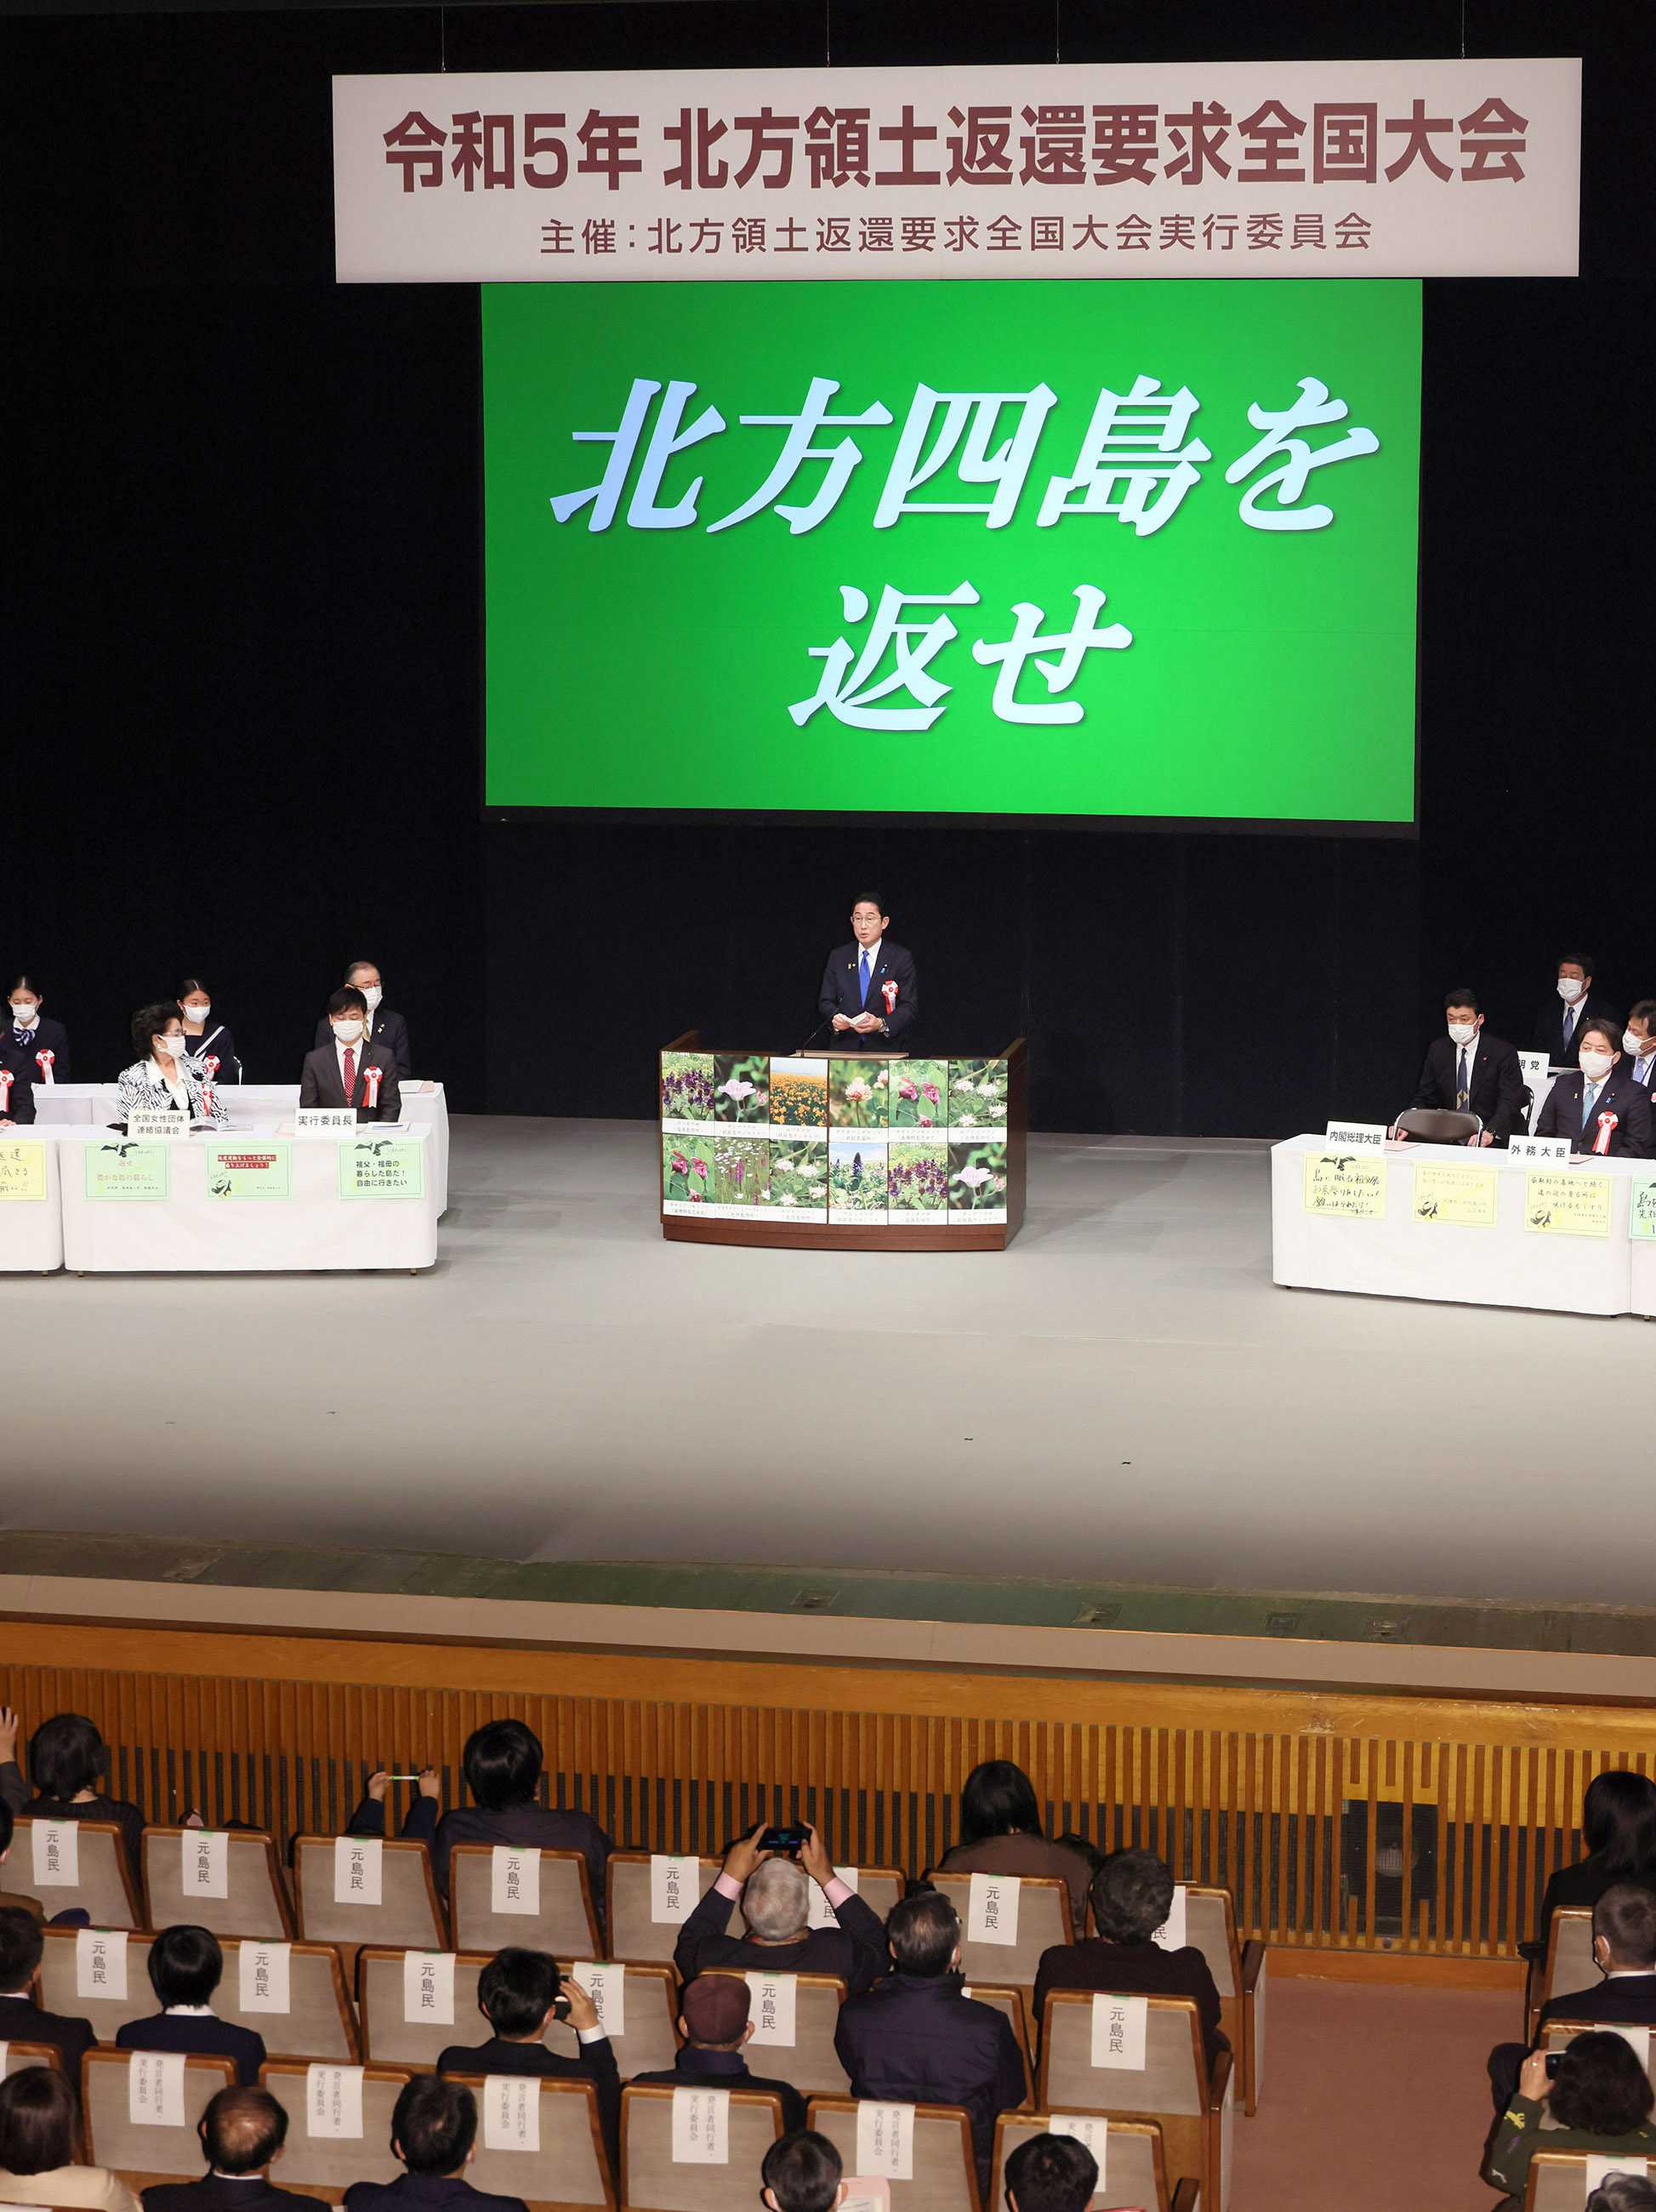 Prime Minister Kishida delivering an address (3)